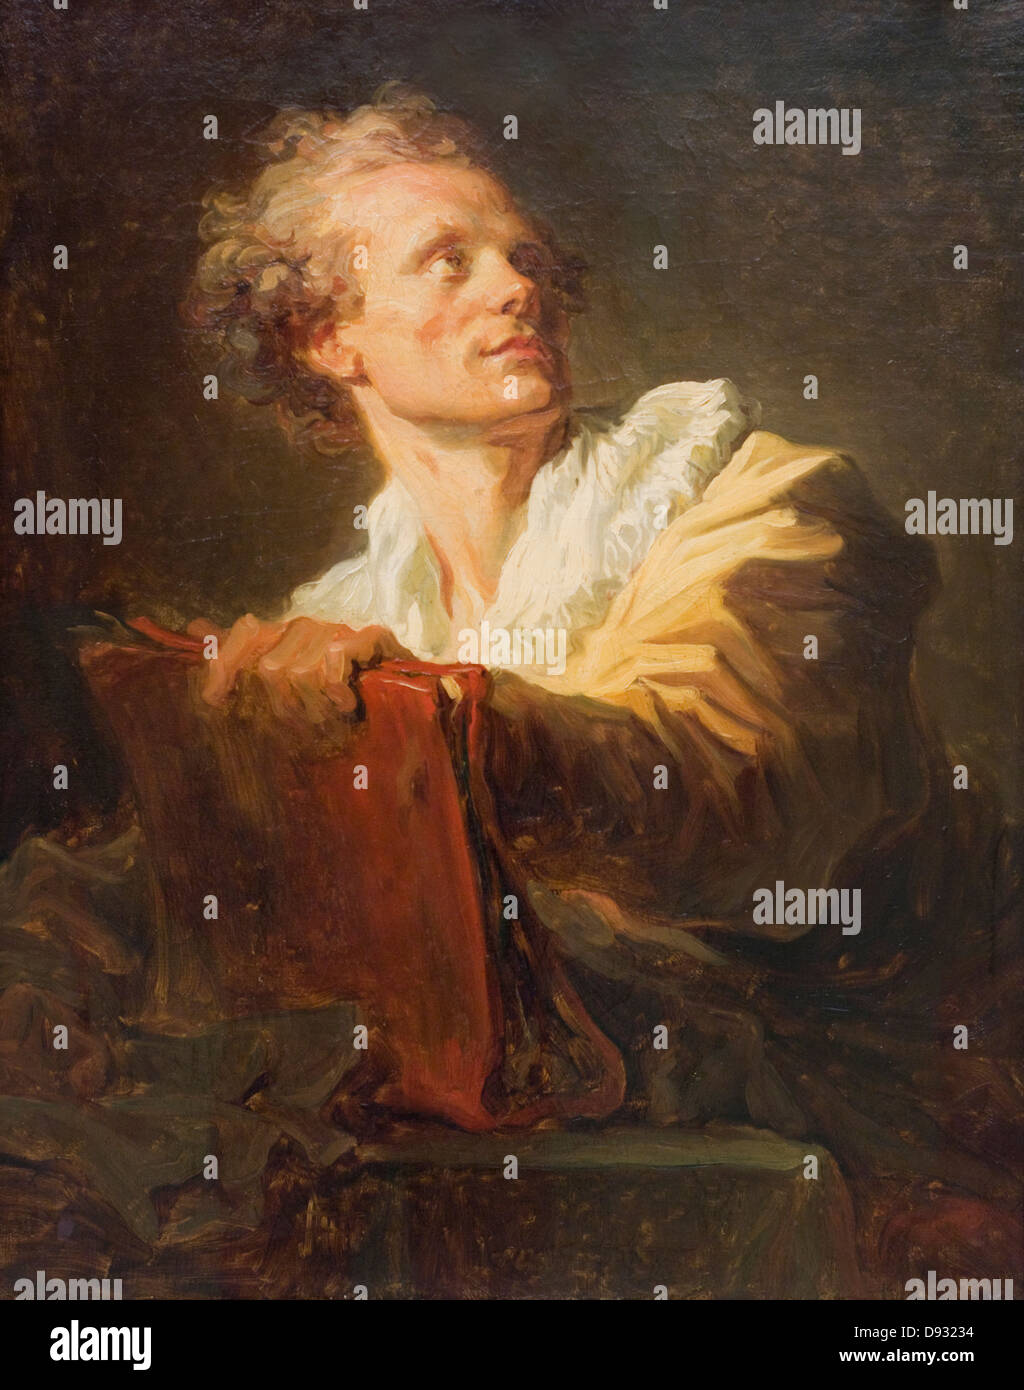 Jean-Honoré Fragonard Ritratto d'onu jeune artiste - Ritratto di una giovane artista 1769 XVIII secolo Parigi - Museo del Louvre Foto Stock